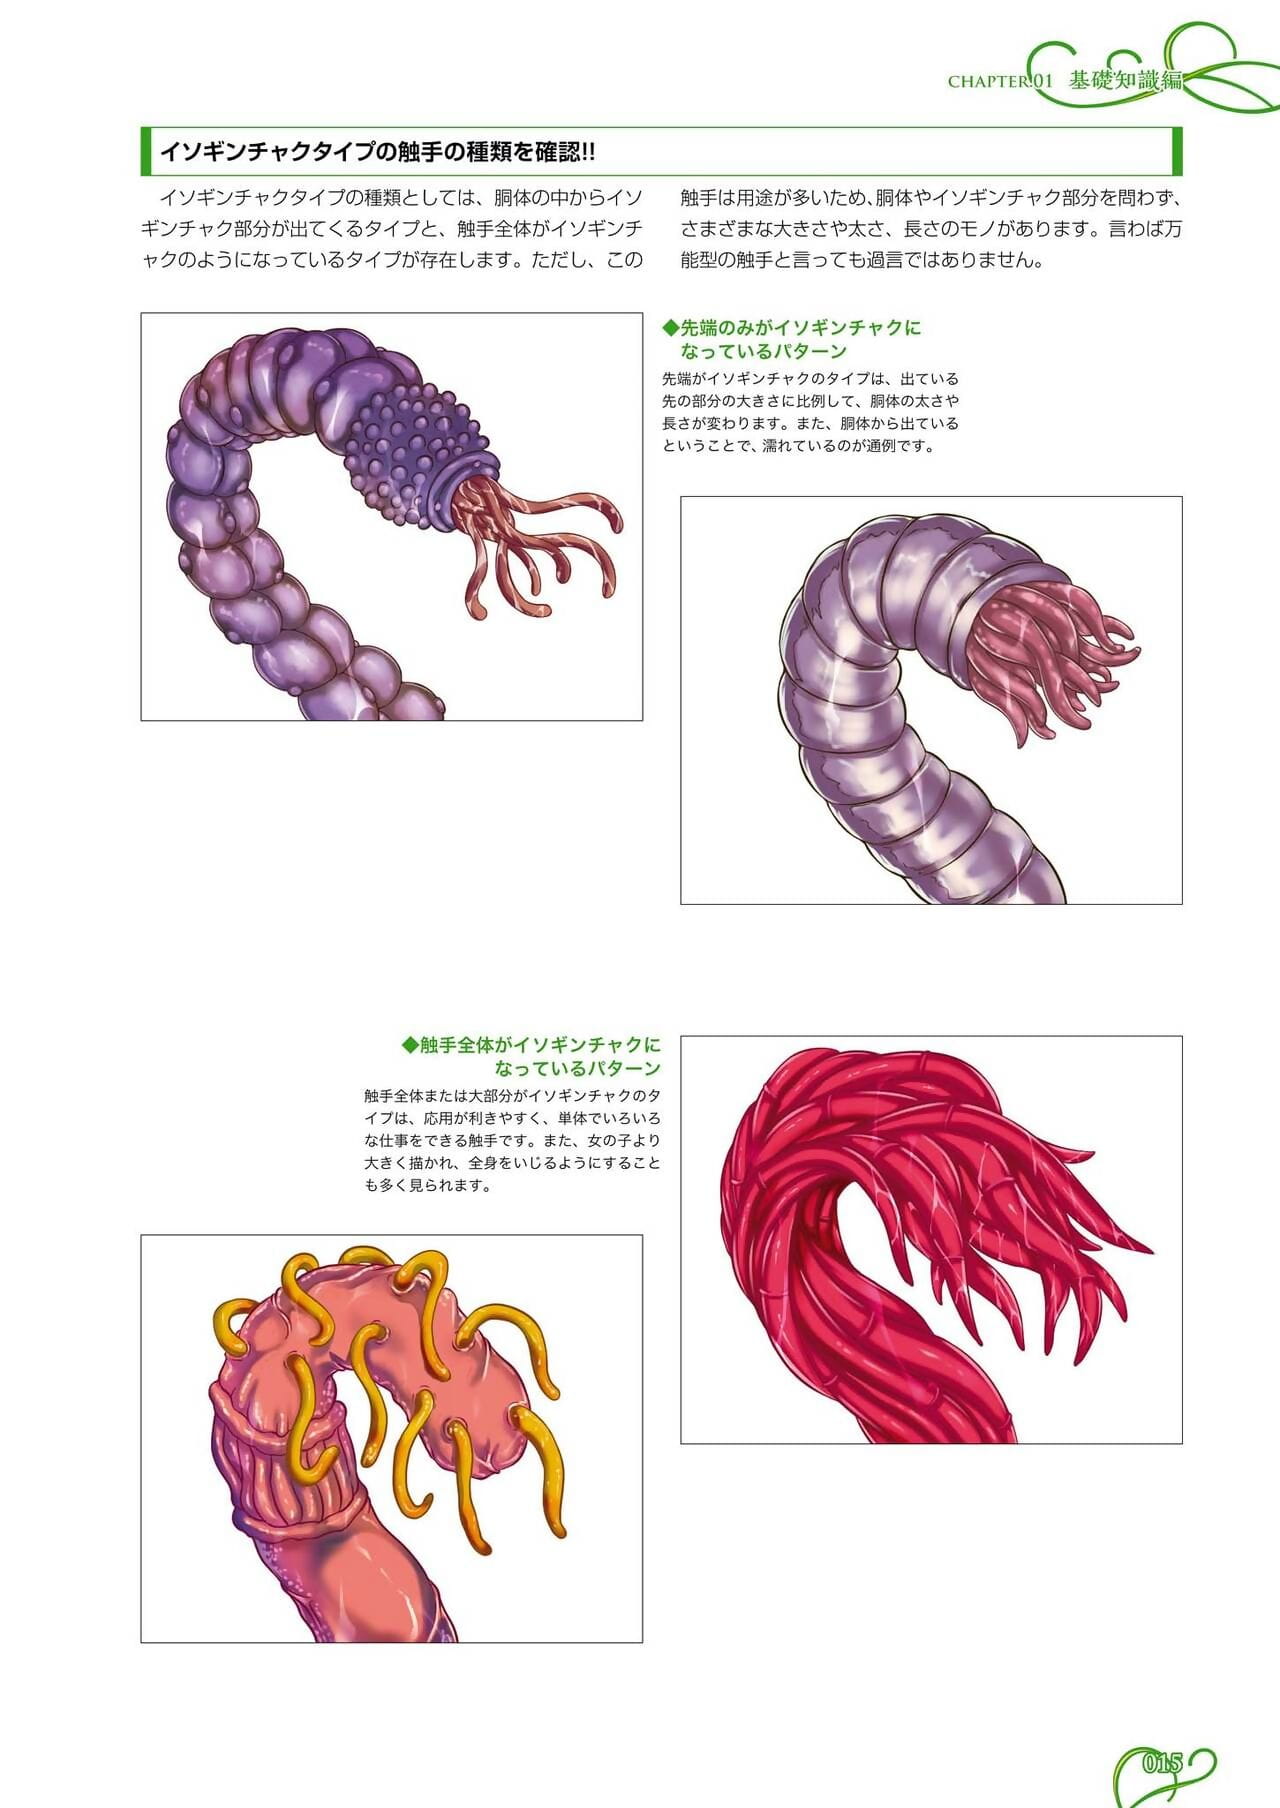 comment pour tirage tentacules page 1